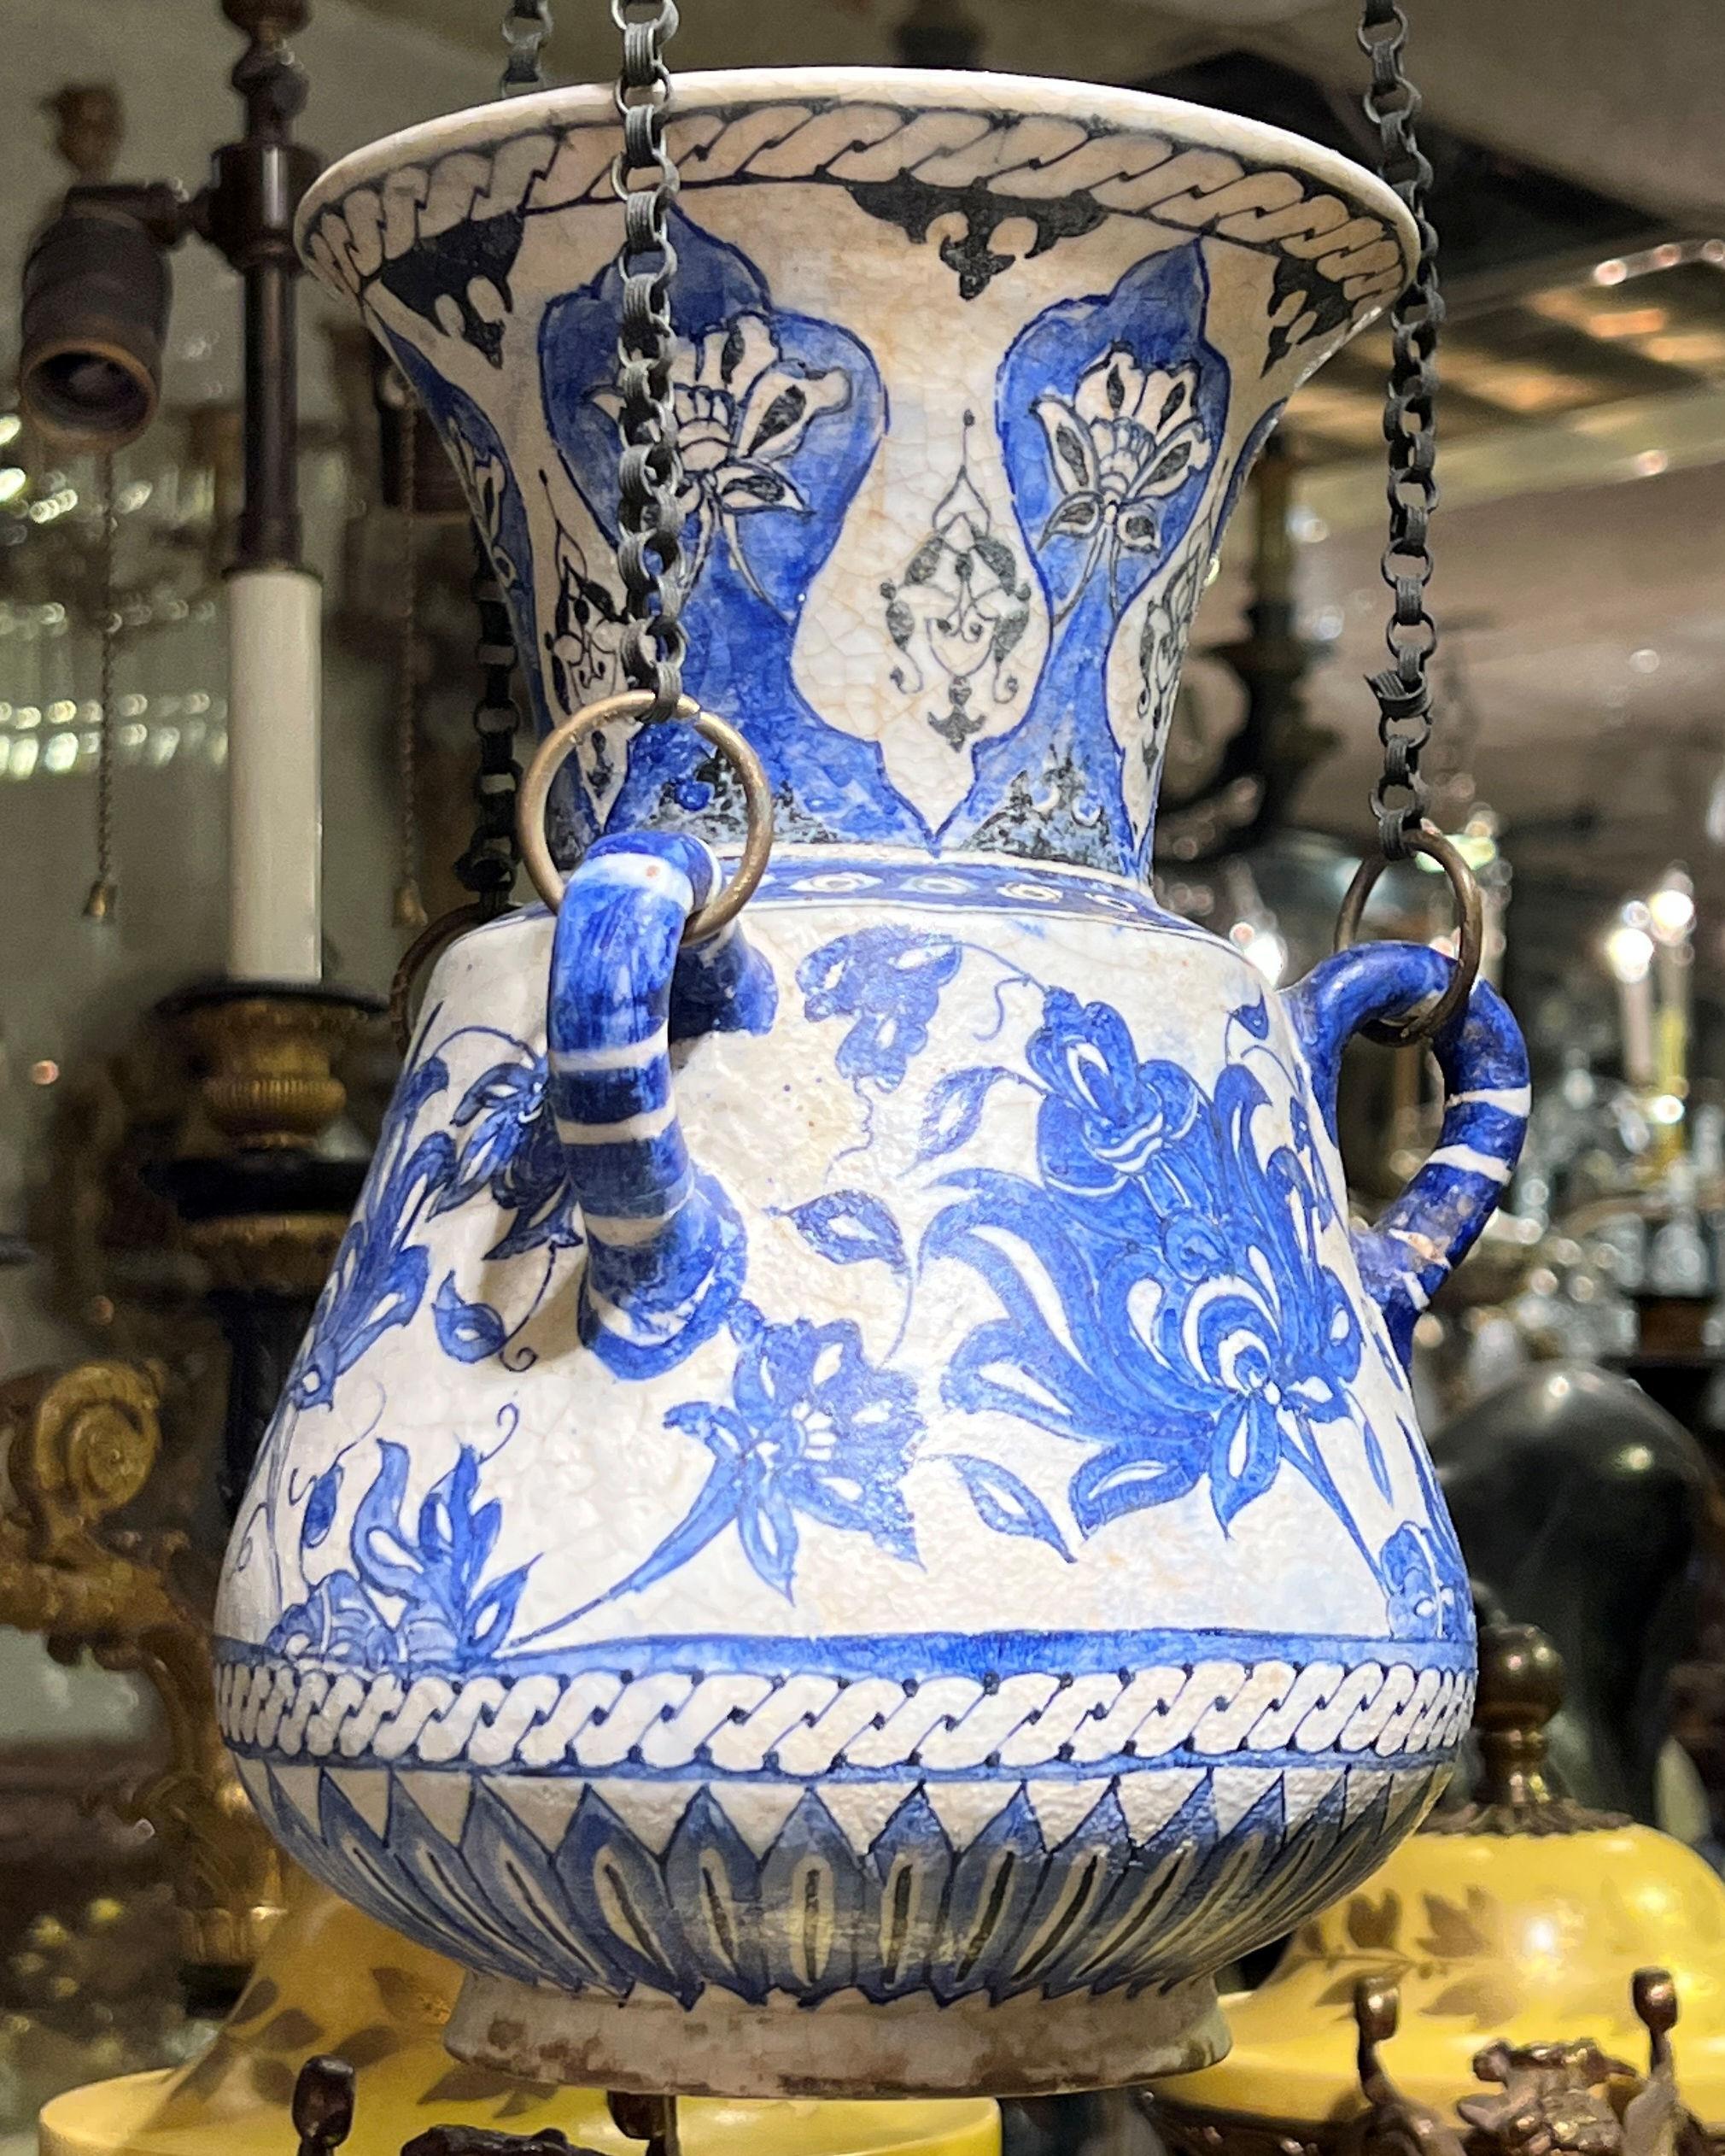 Sehr feine Qualität Nahost blau und weiß Keramik Moschee-Lampe mit original Hardware-Ketten.